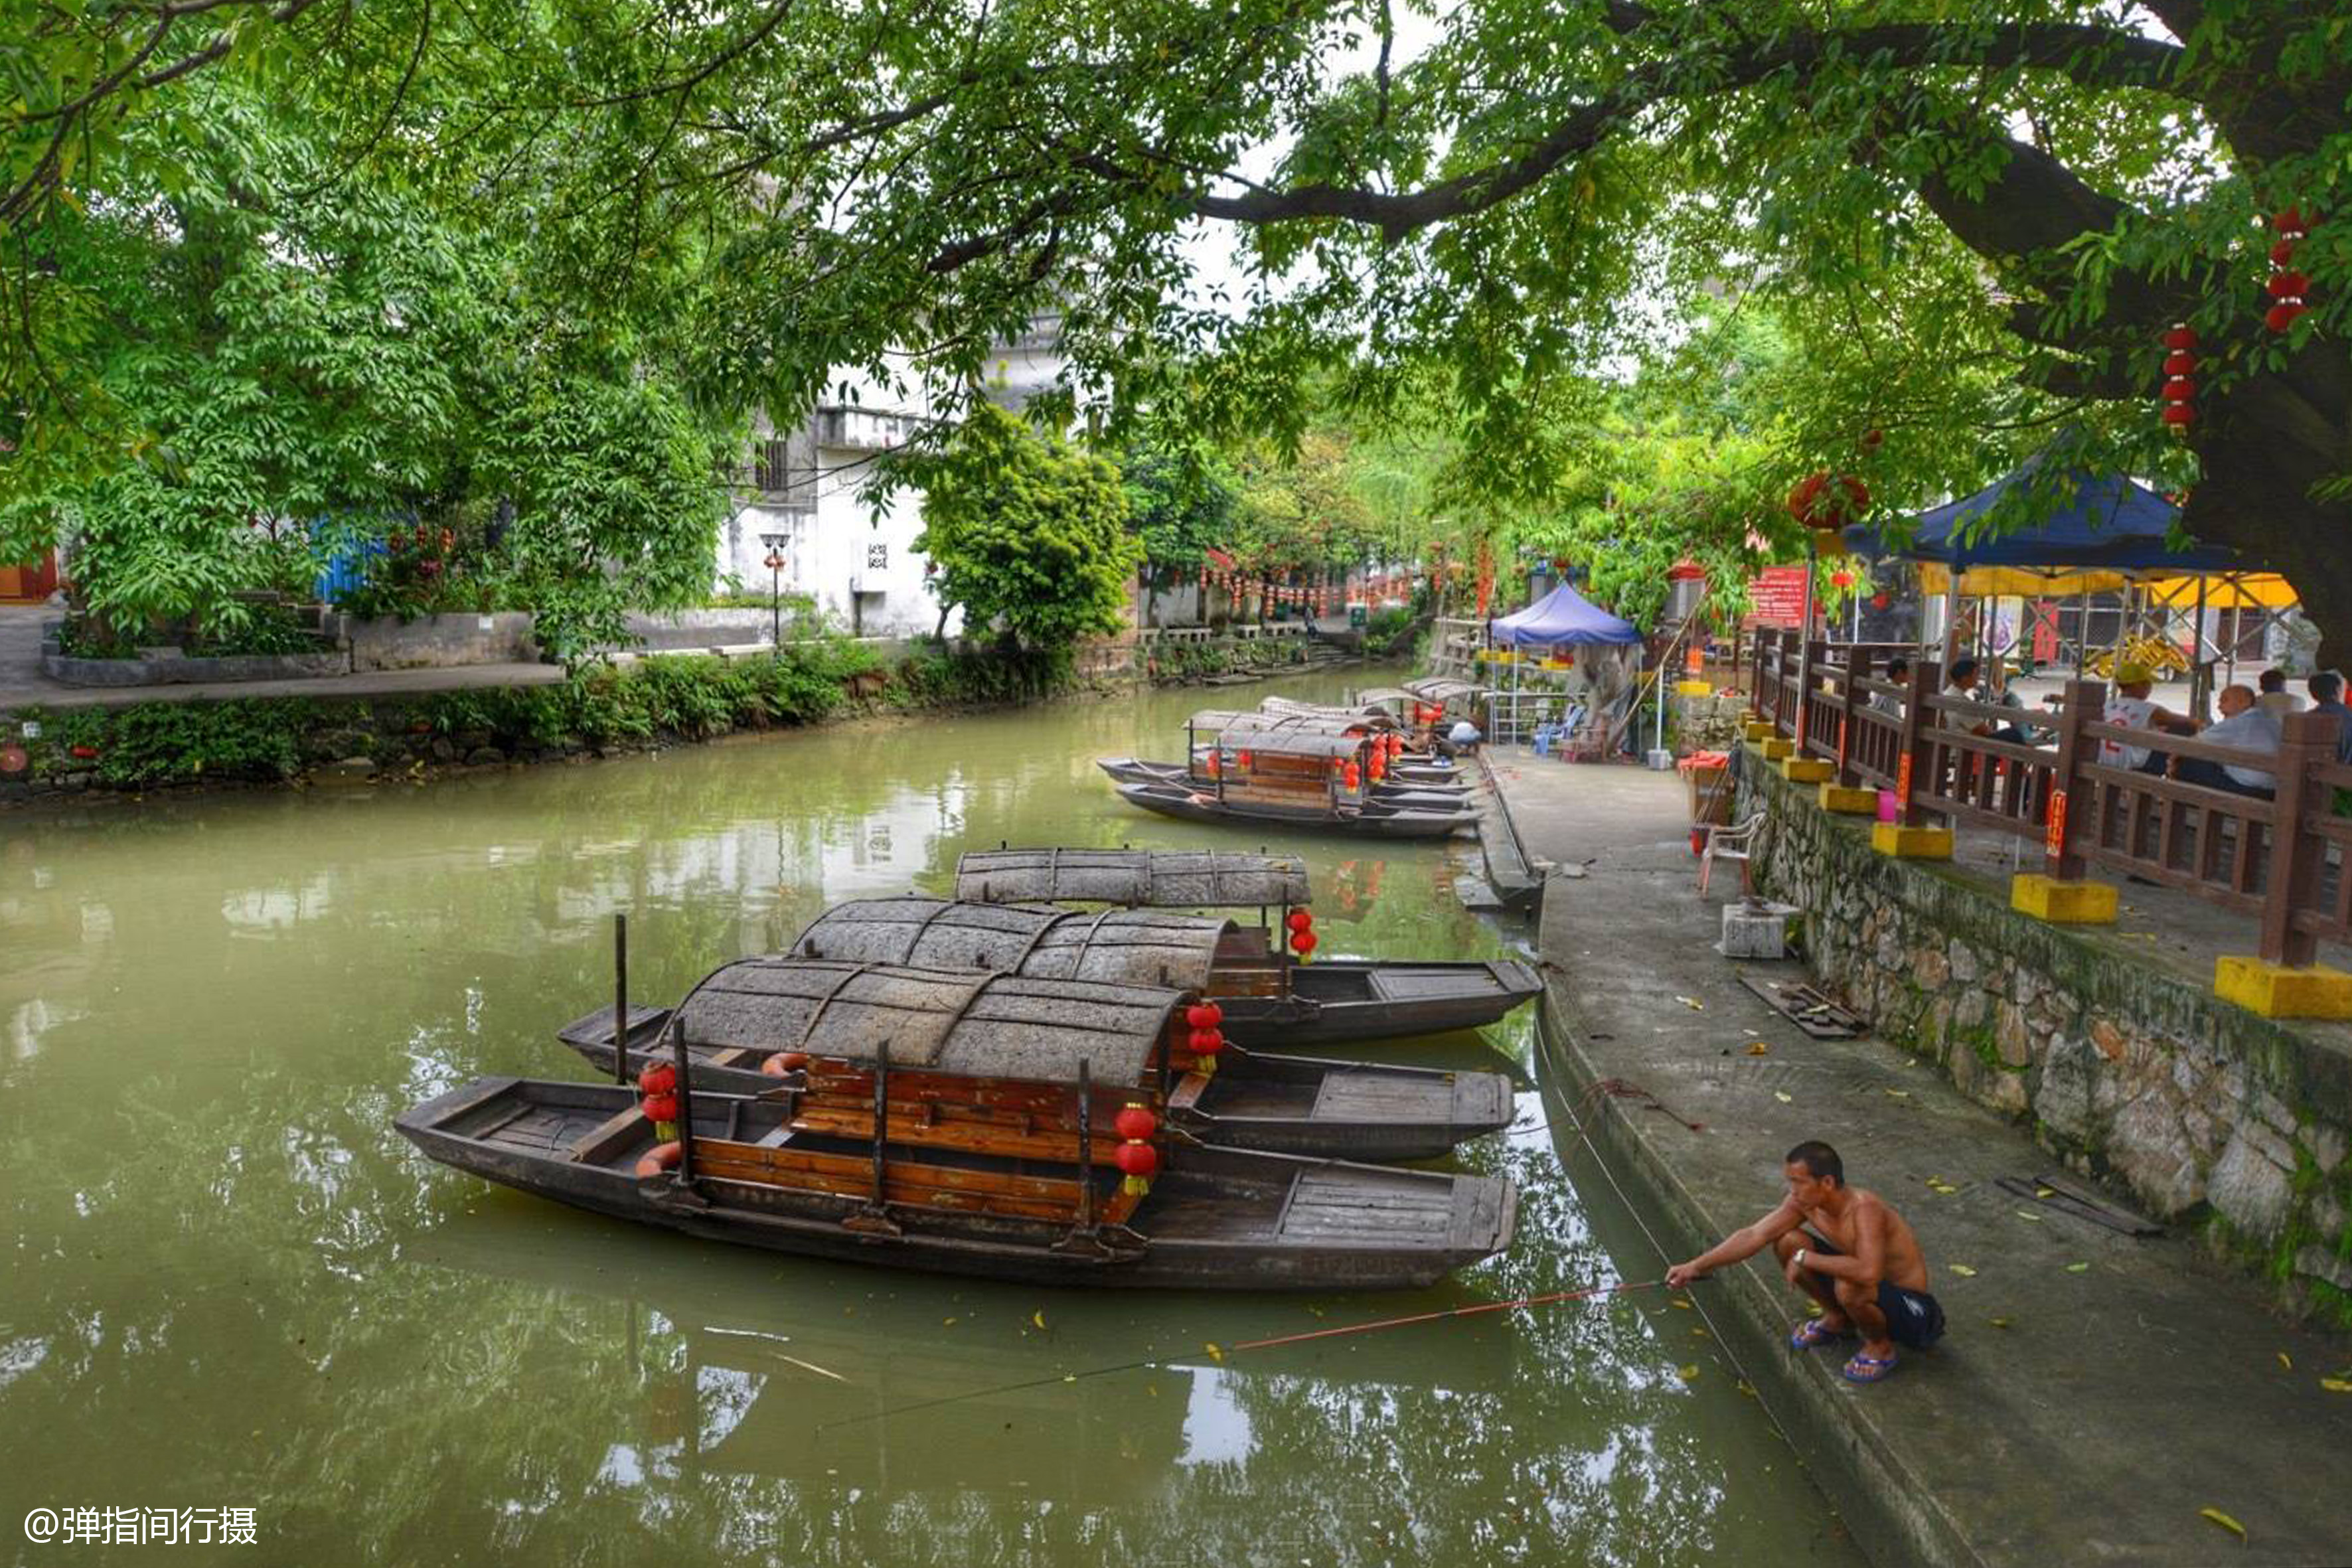 小桥流水人家，中国5个最美水乡古镇，第1个最好玩可坐在水里吃饭_搜狐旅游_搜狐网